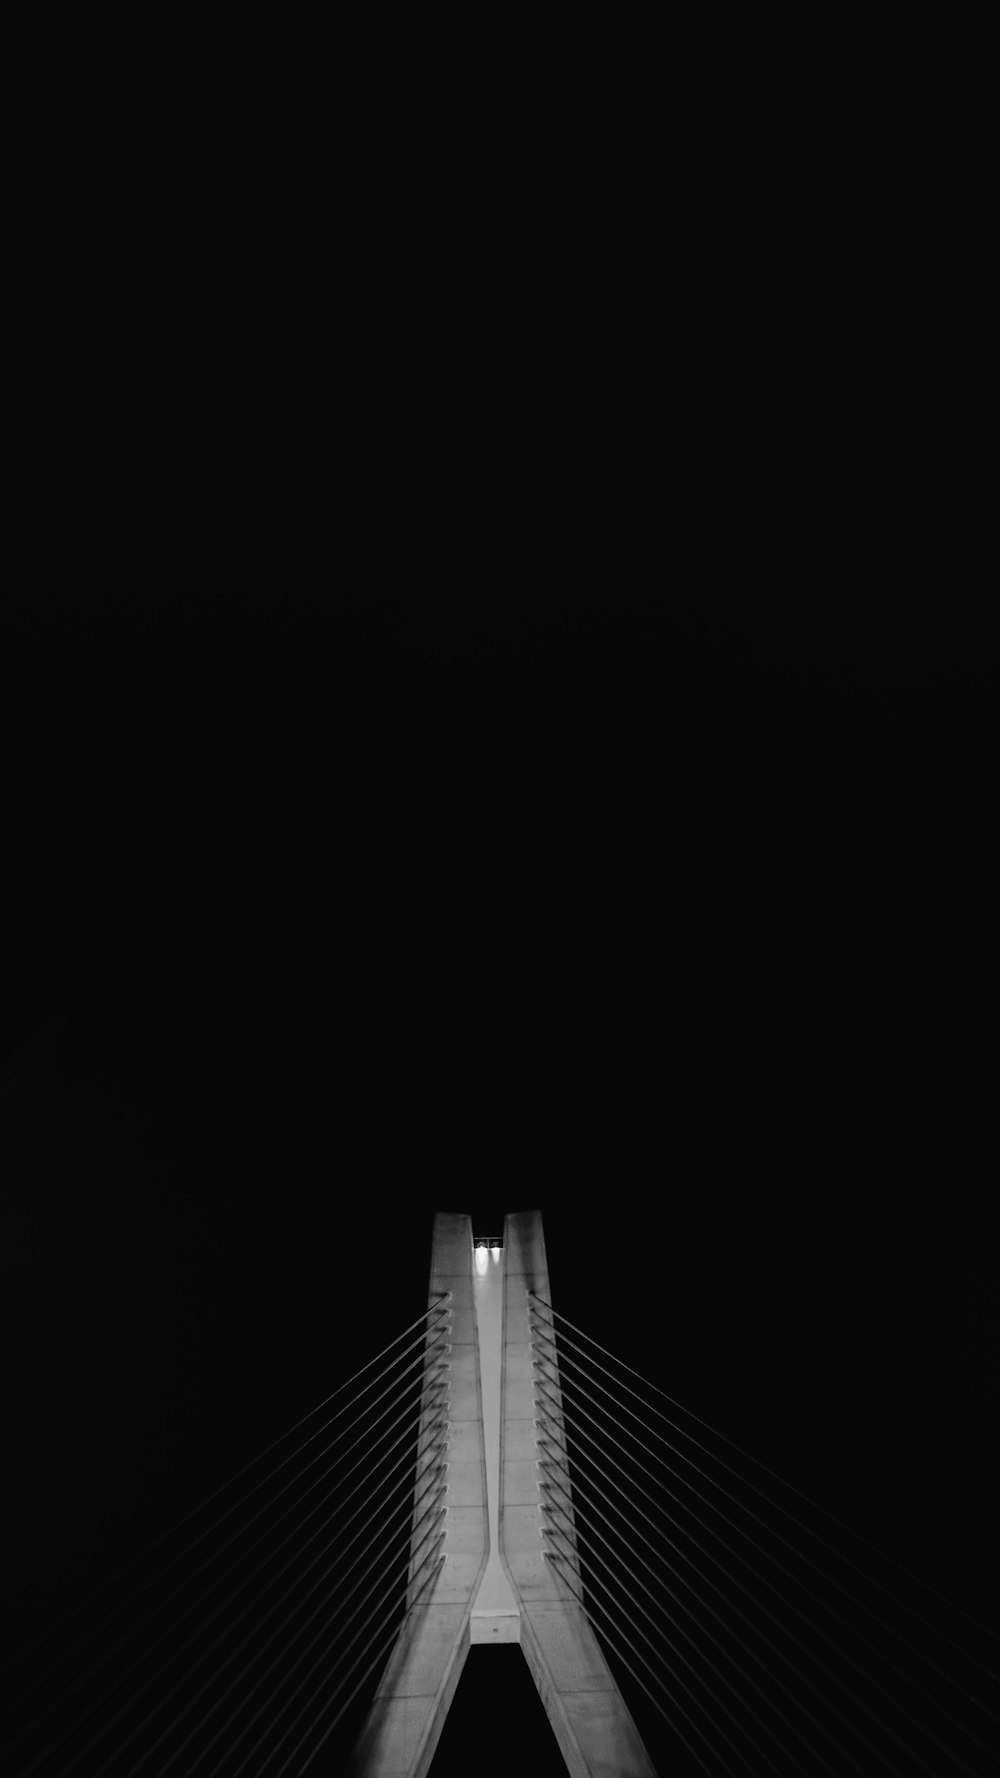 foto de baixo ângulo do pilar da ponte com cabos